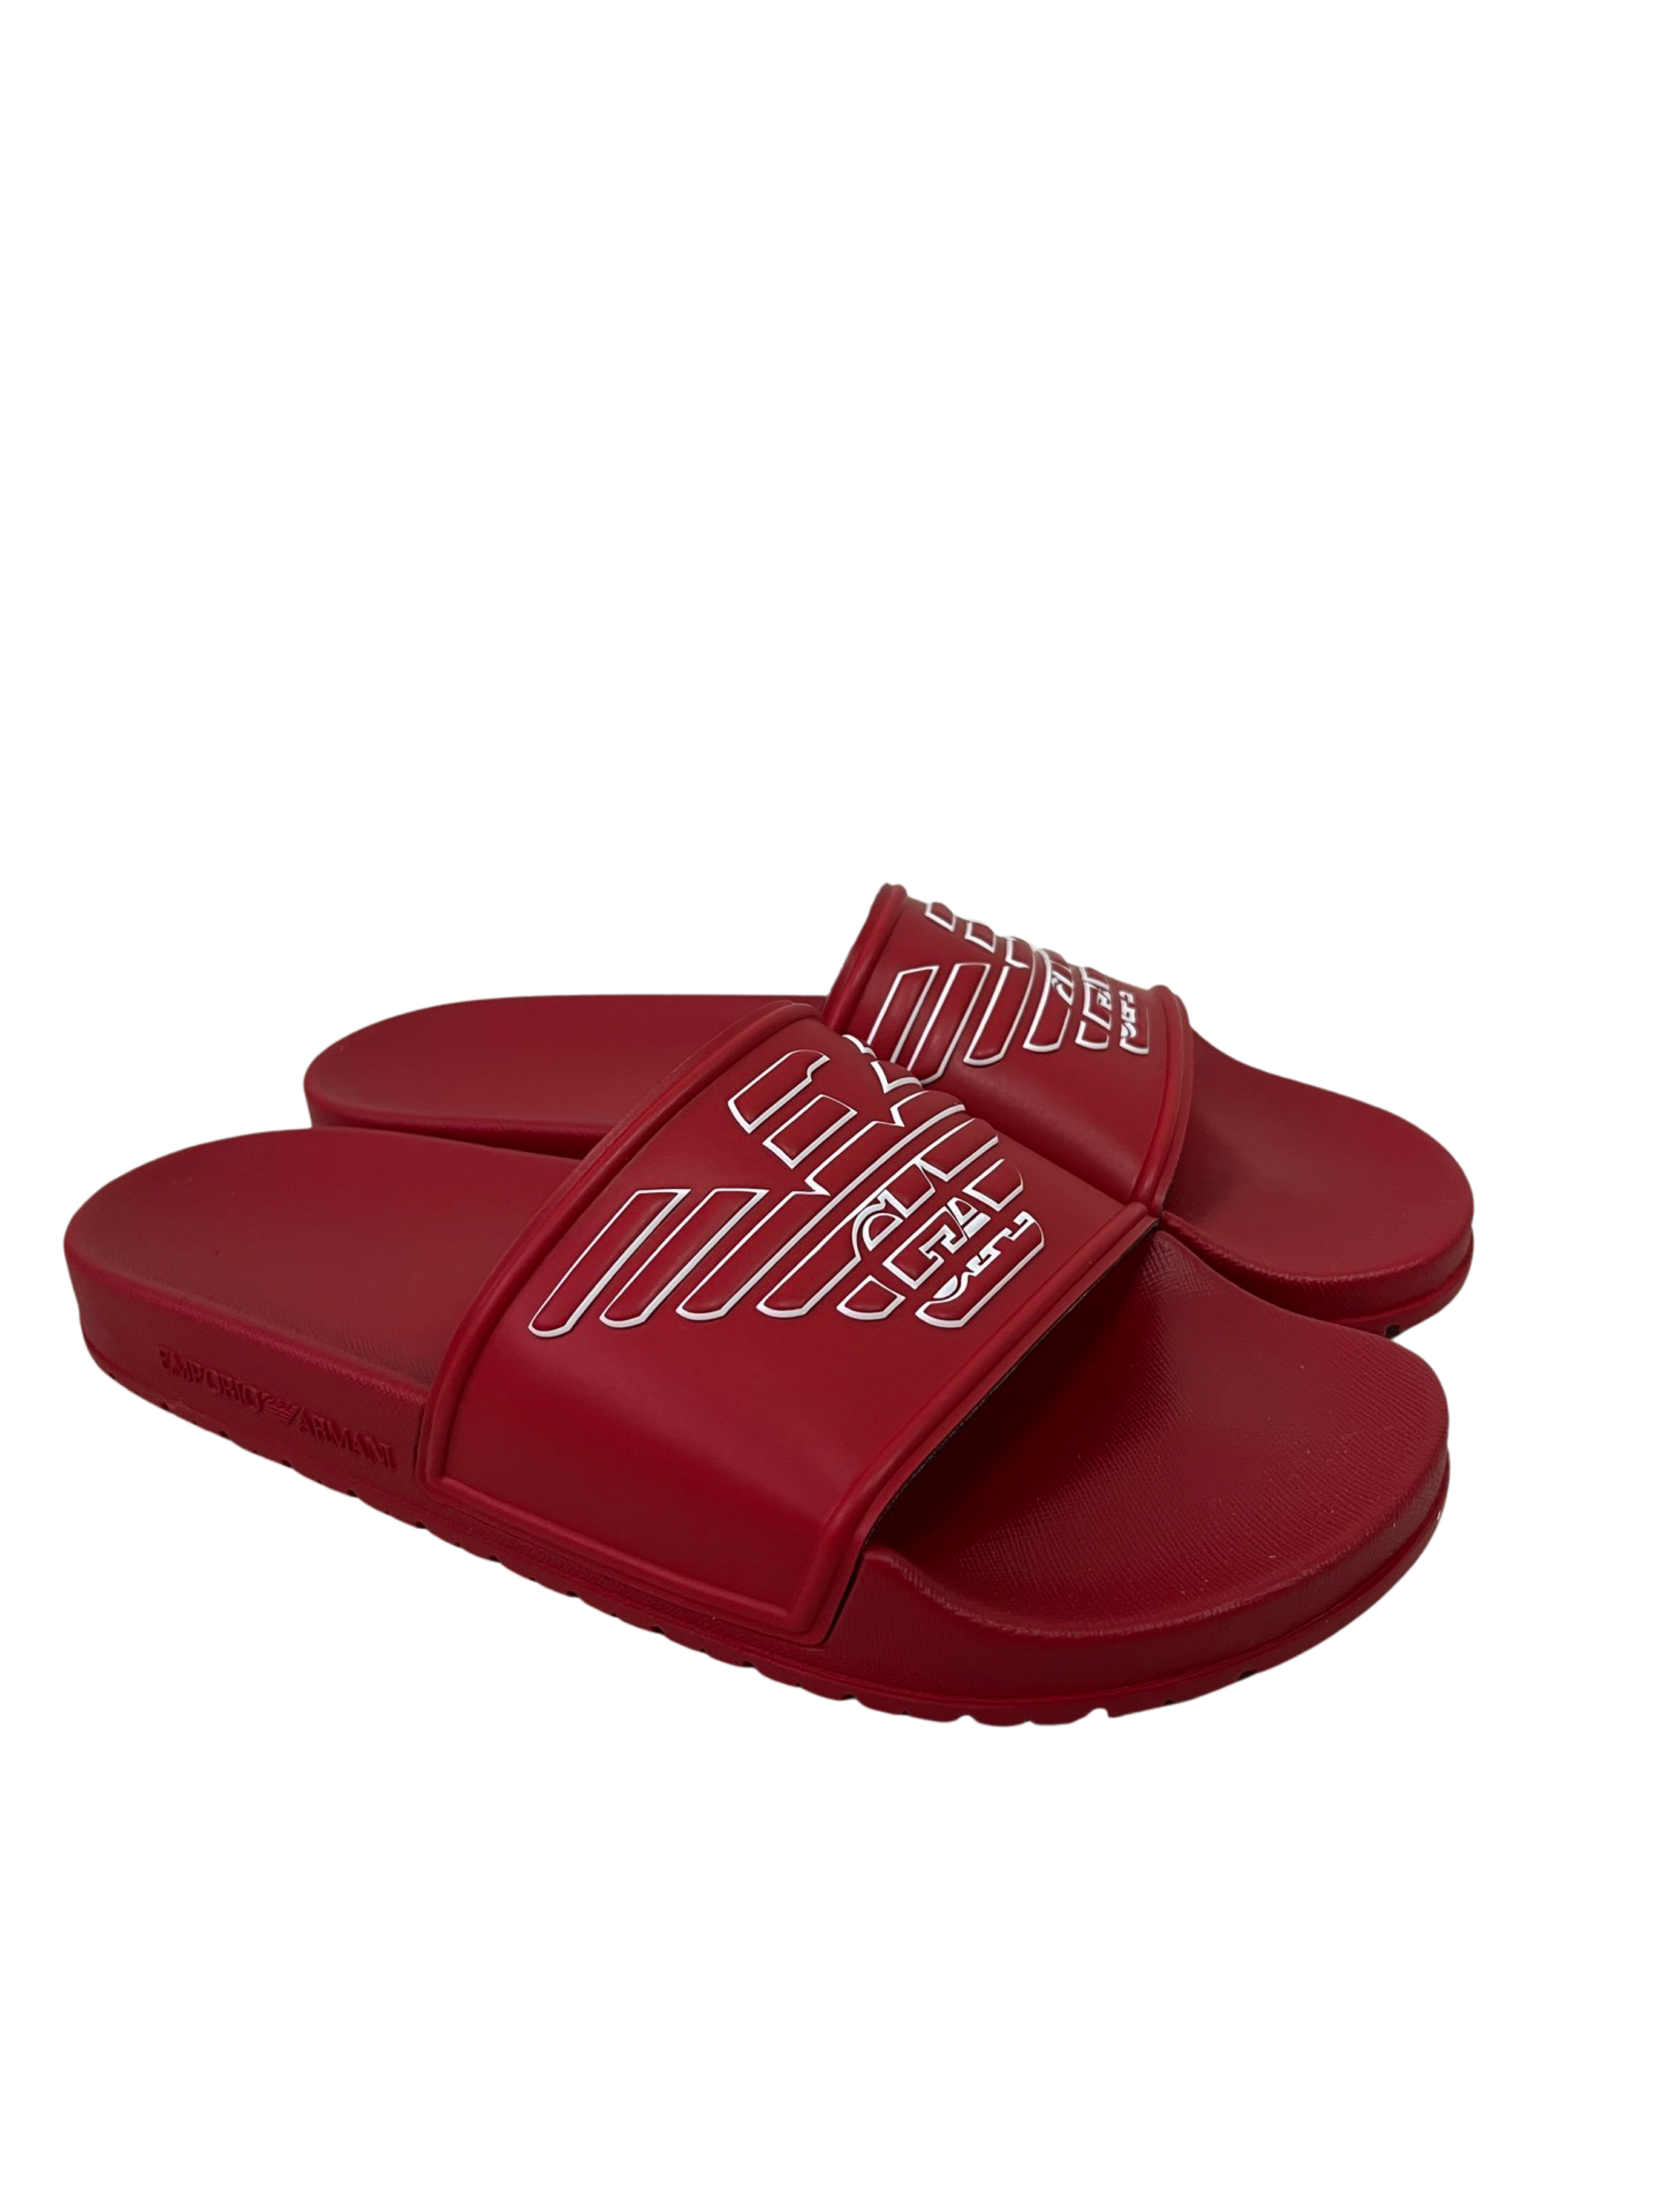 Emporio Armani slippers